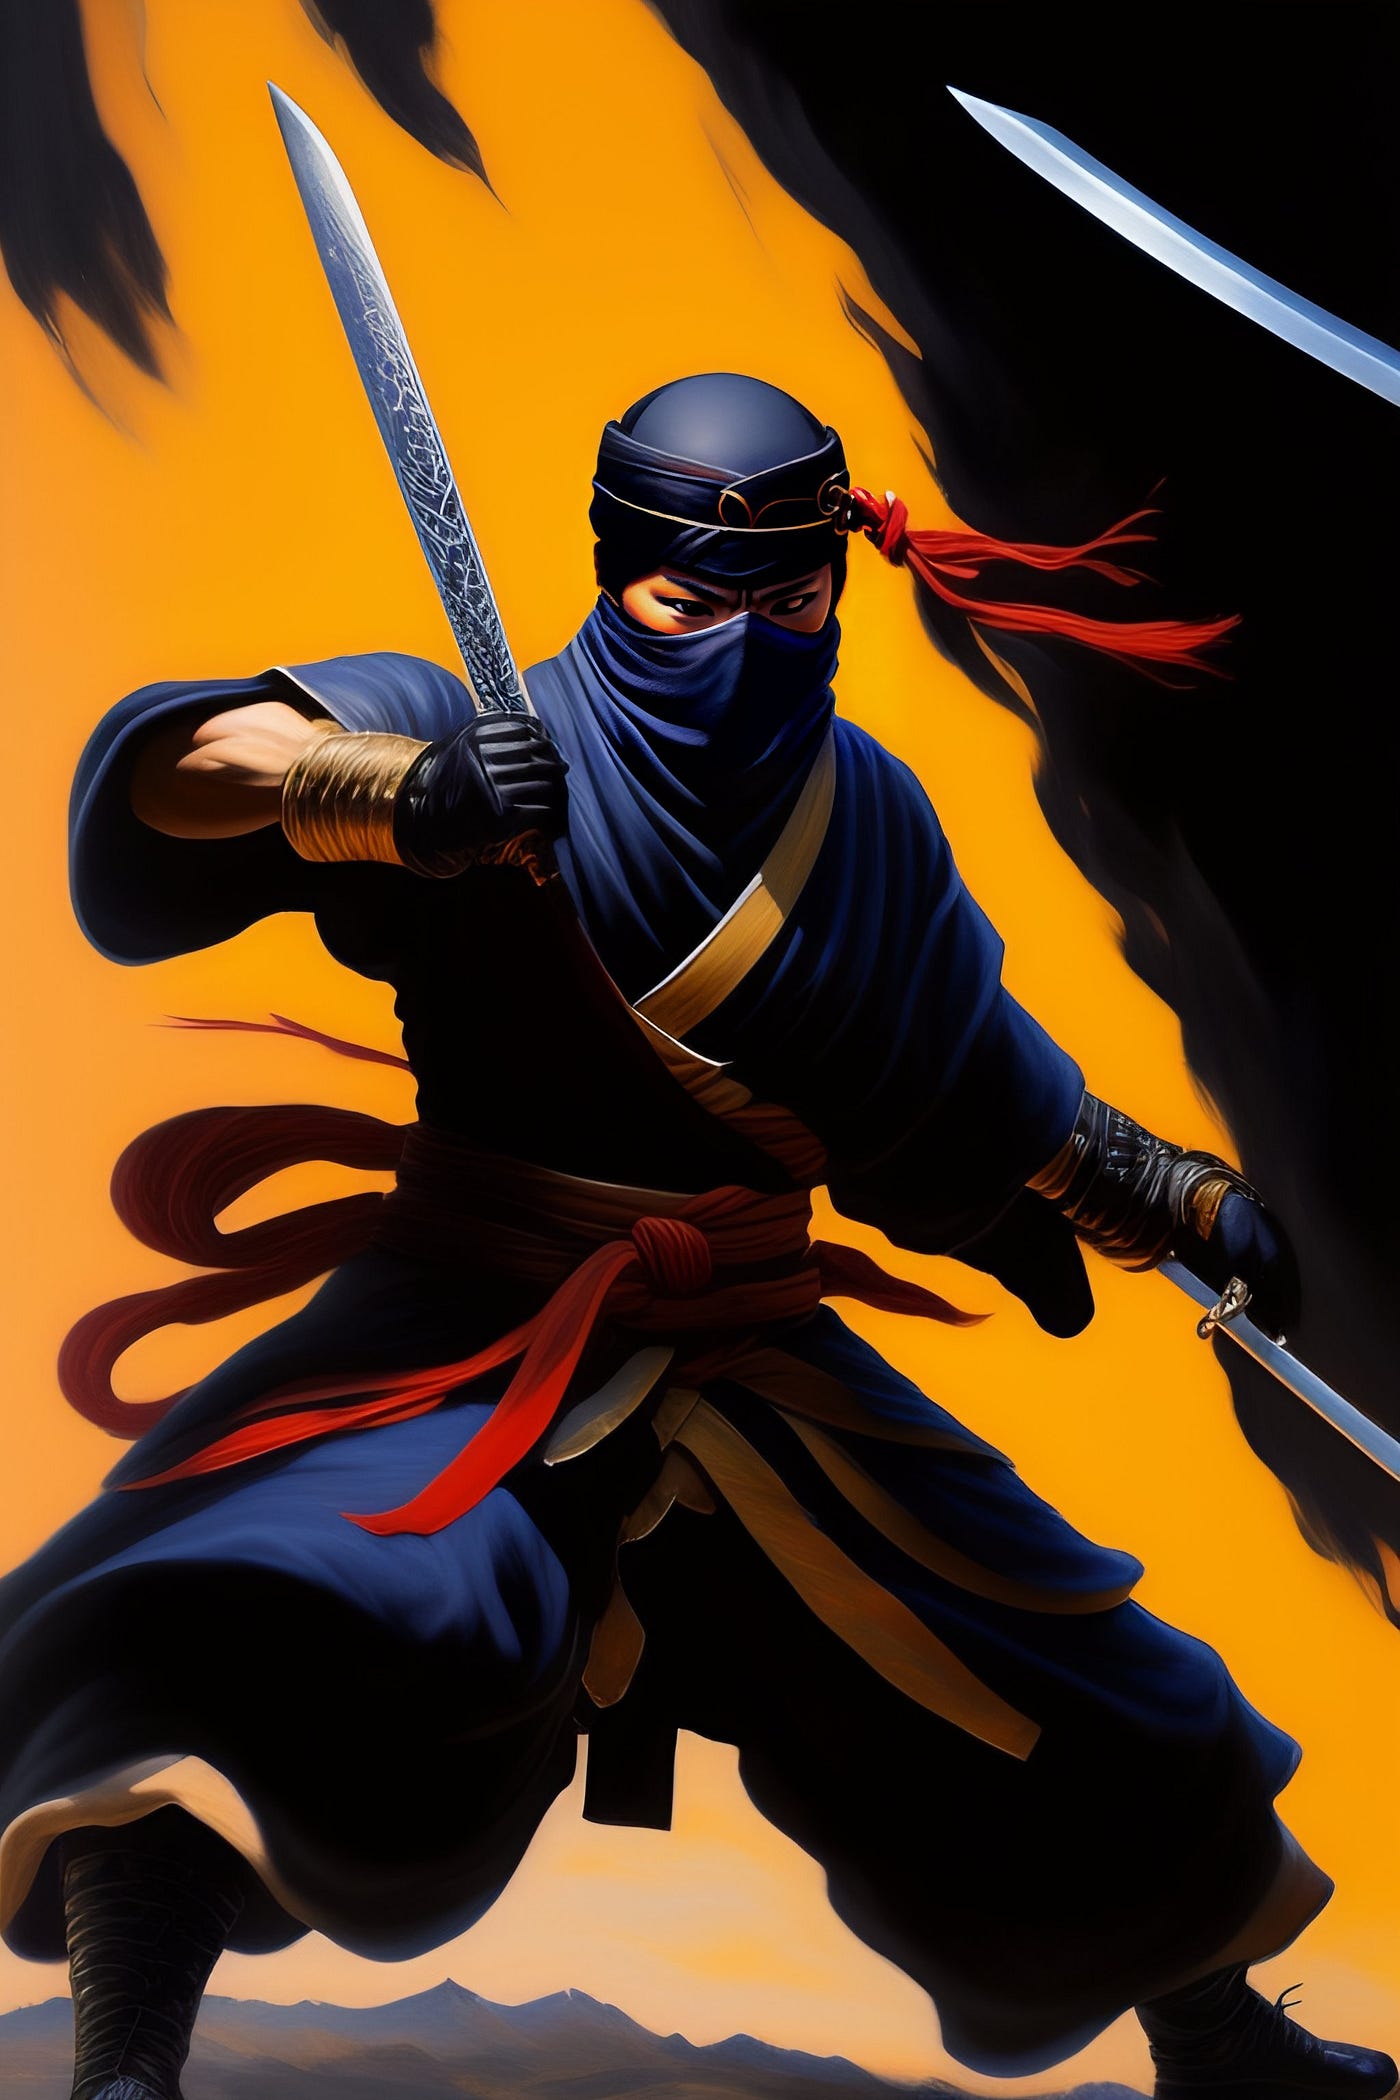 Ninja Assassin 2 ☯ NINJUTSU Brutal Training  Mind & Body Real  Transformation. - Rare J. Vargas TV! 